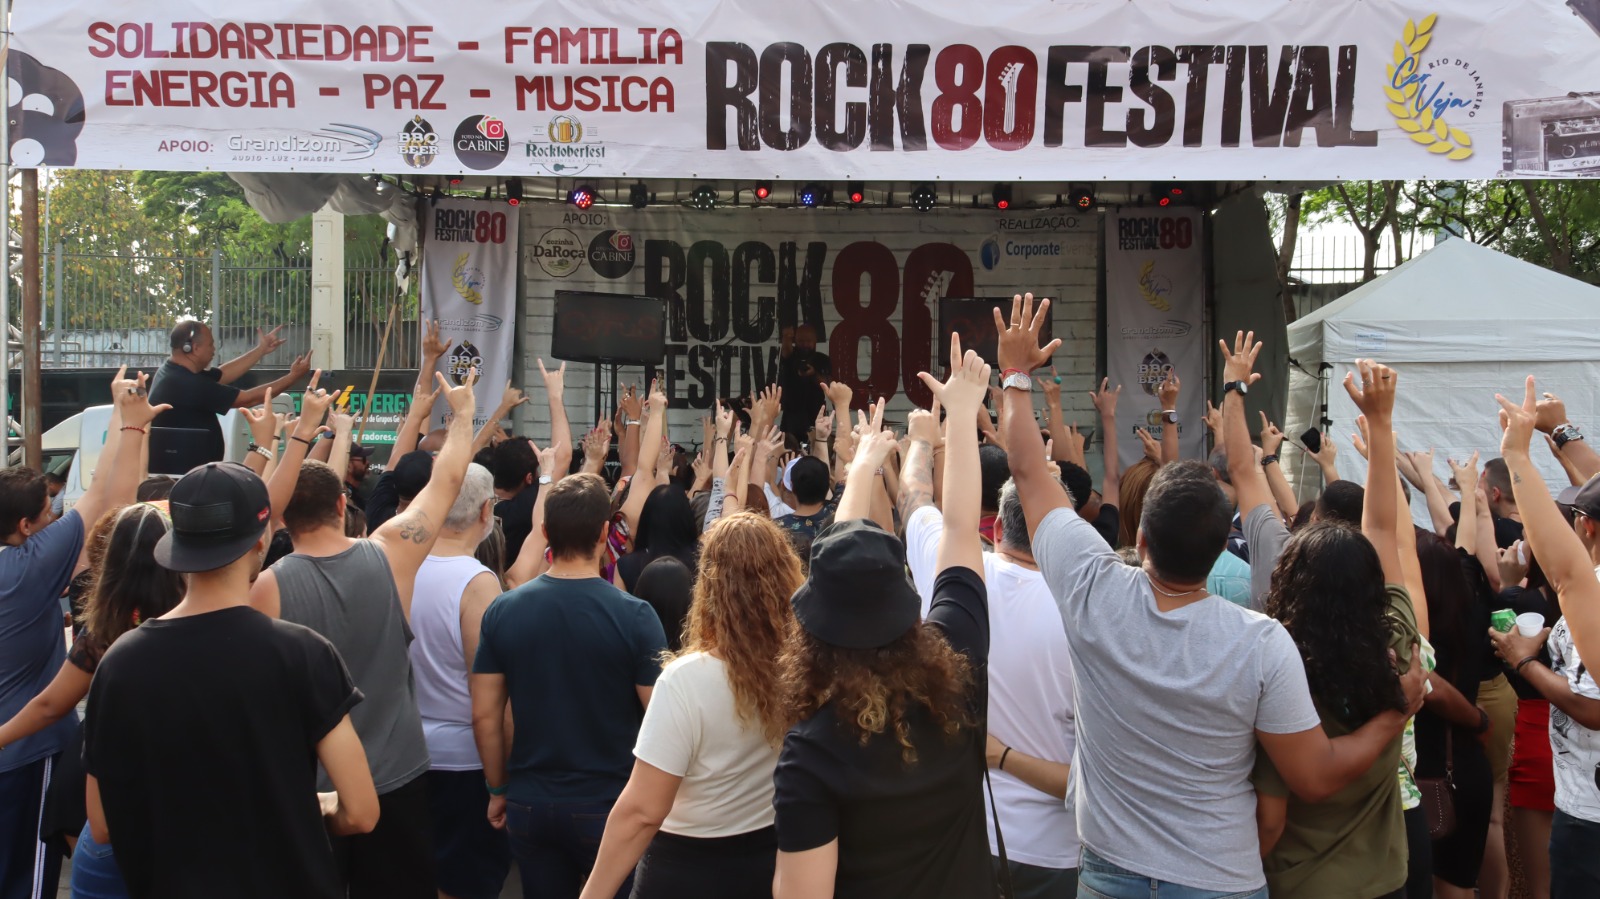 Roda Gigante Yup Star recebe Rock 80 Festival edição St. Patrick’s